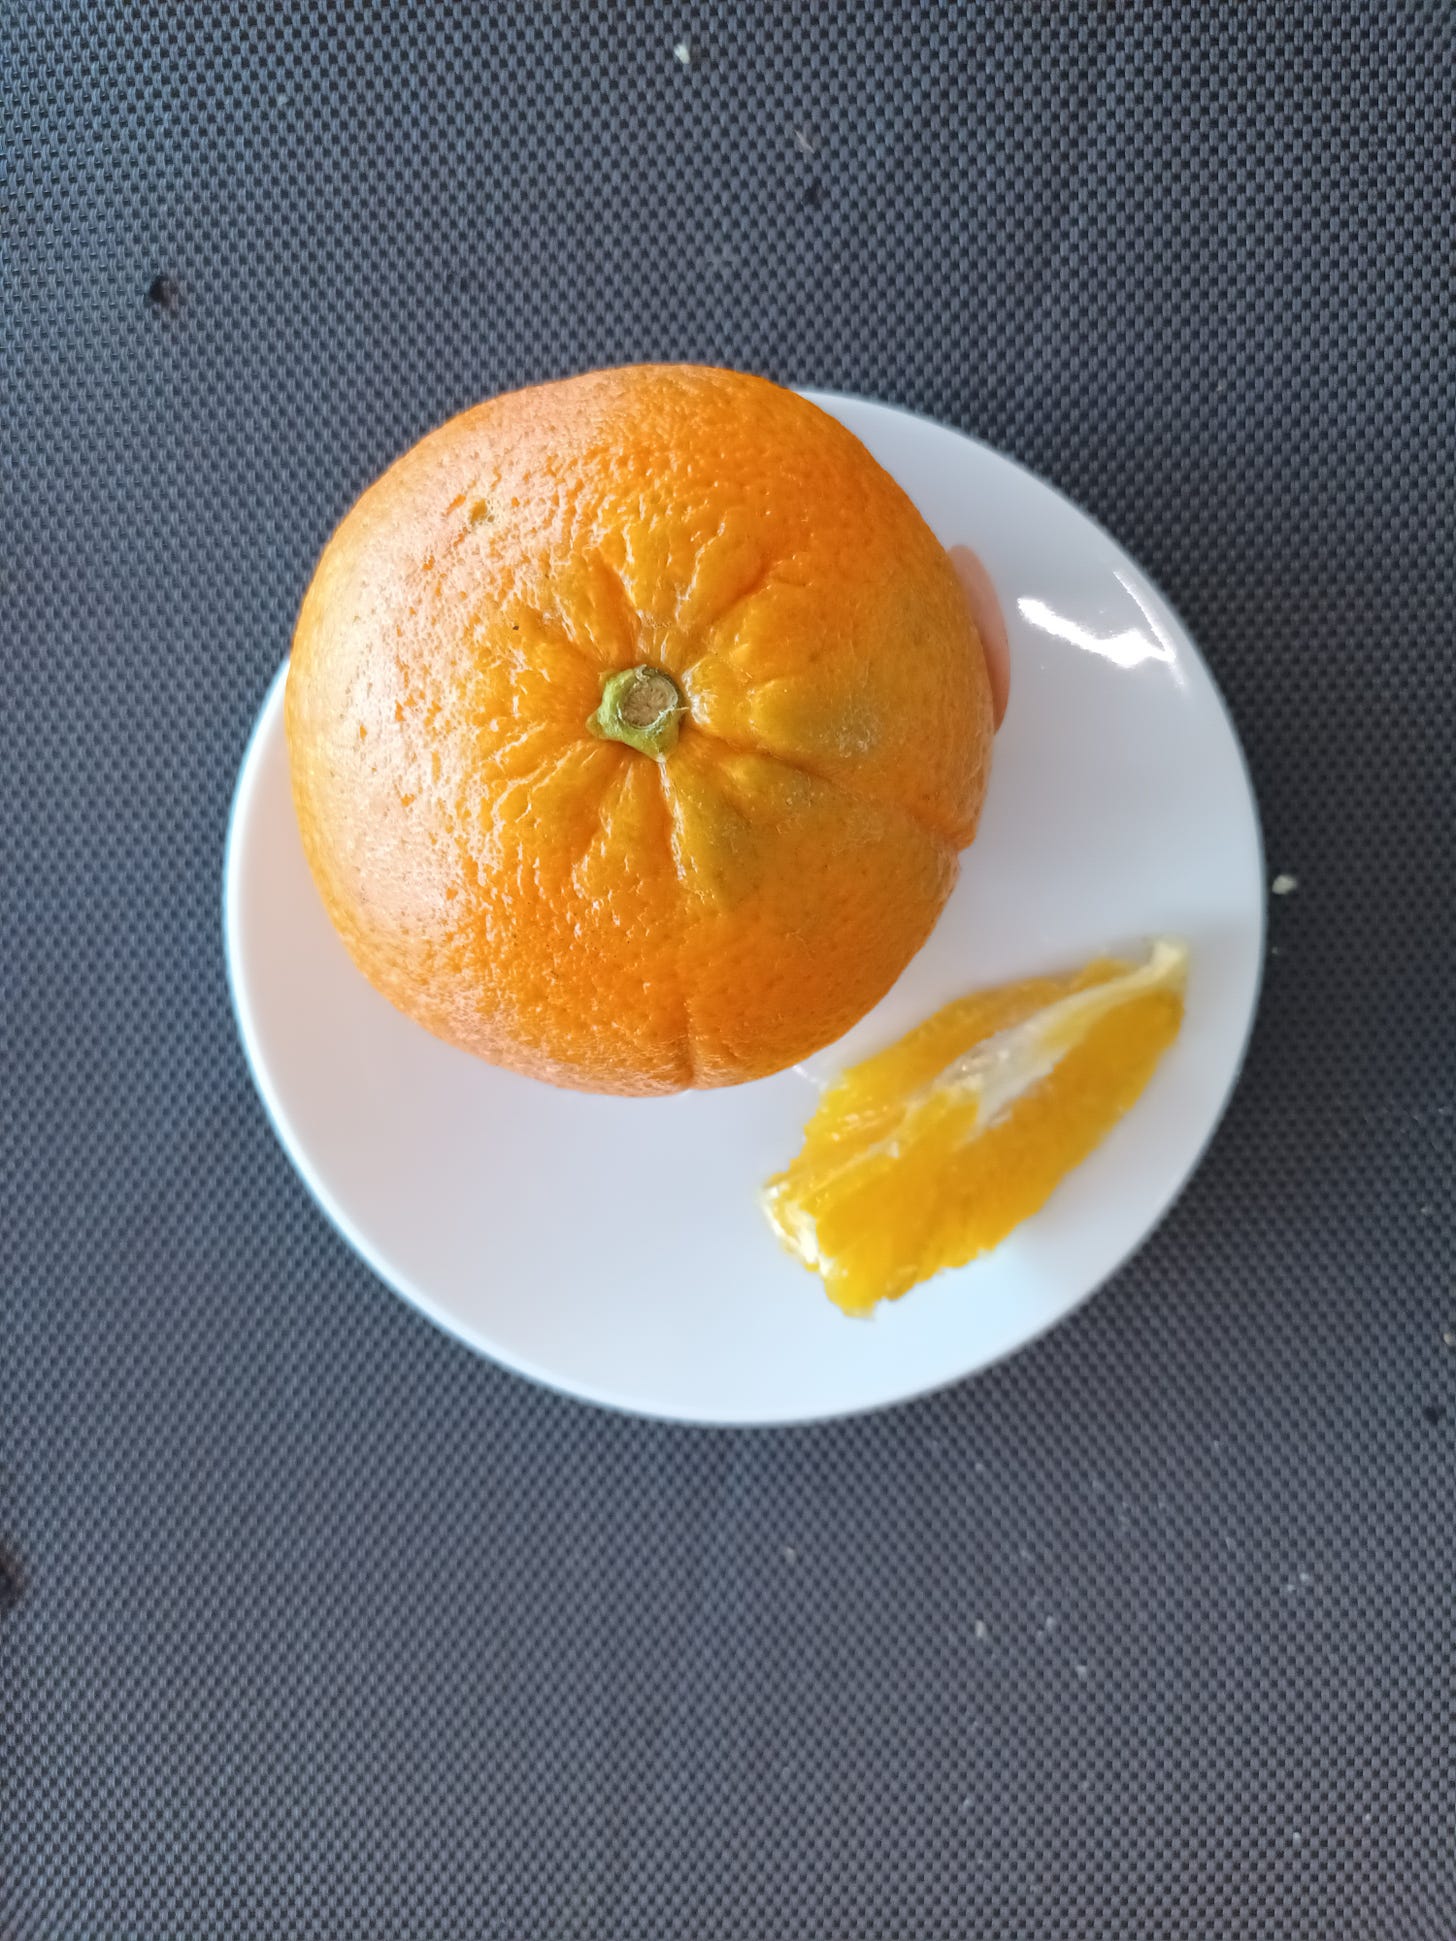 taronja i vi dolça